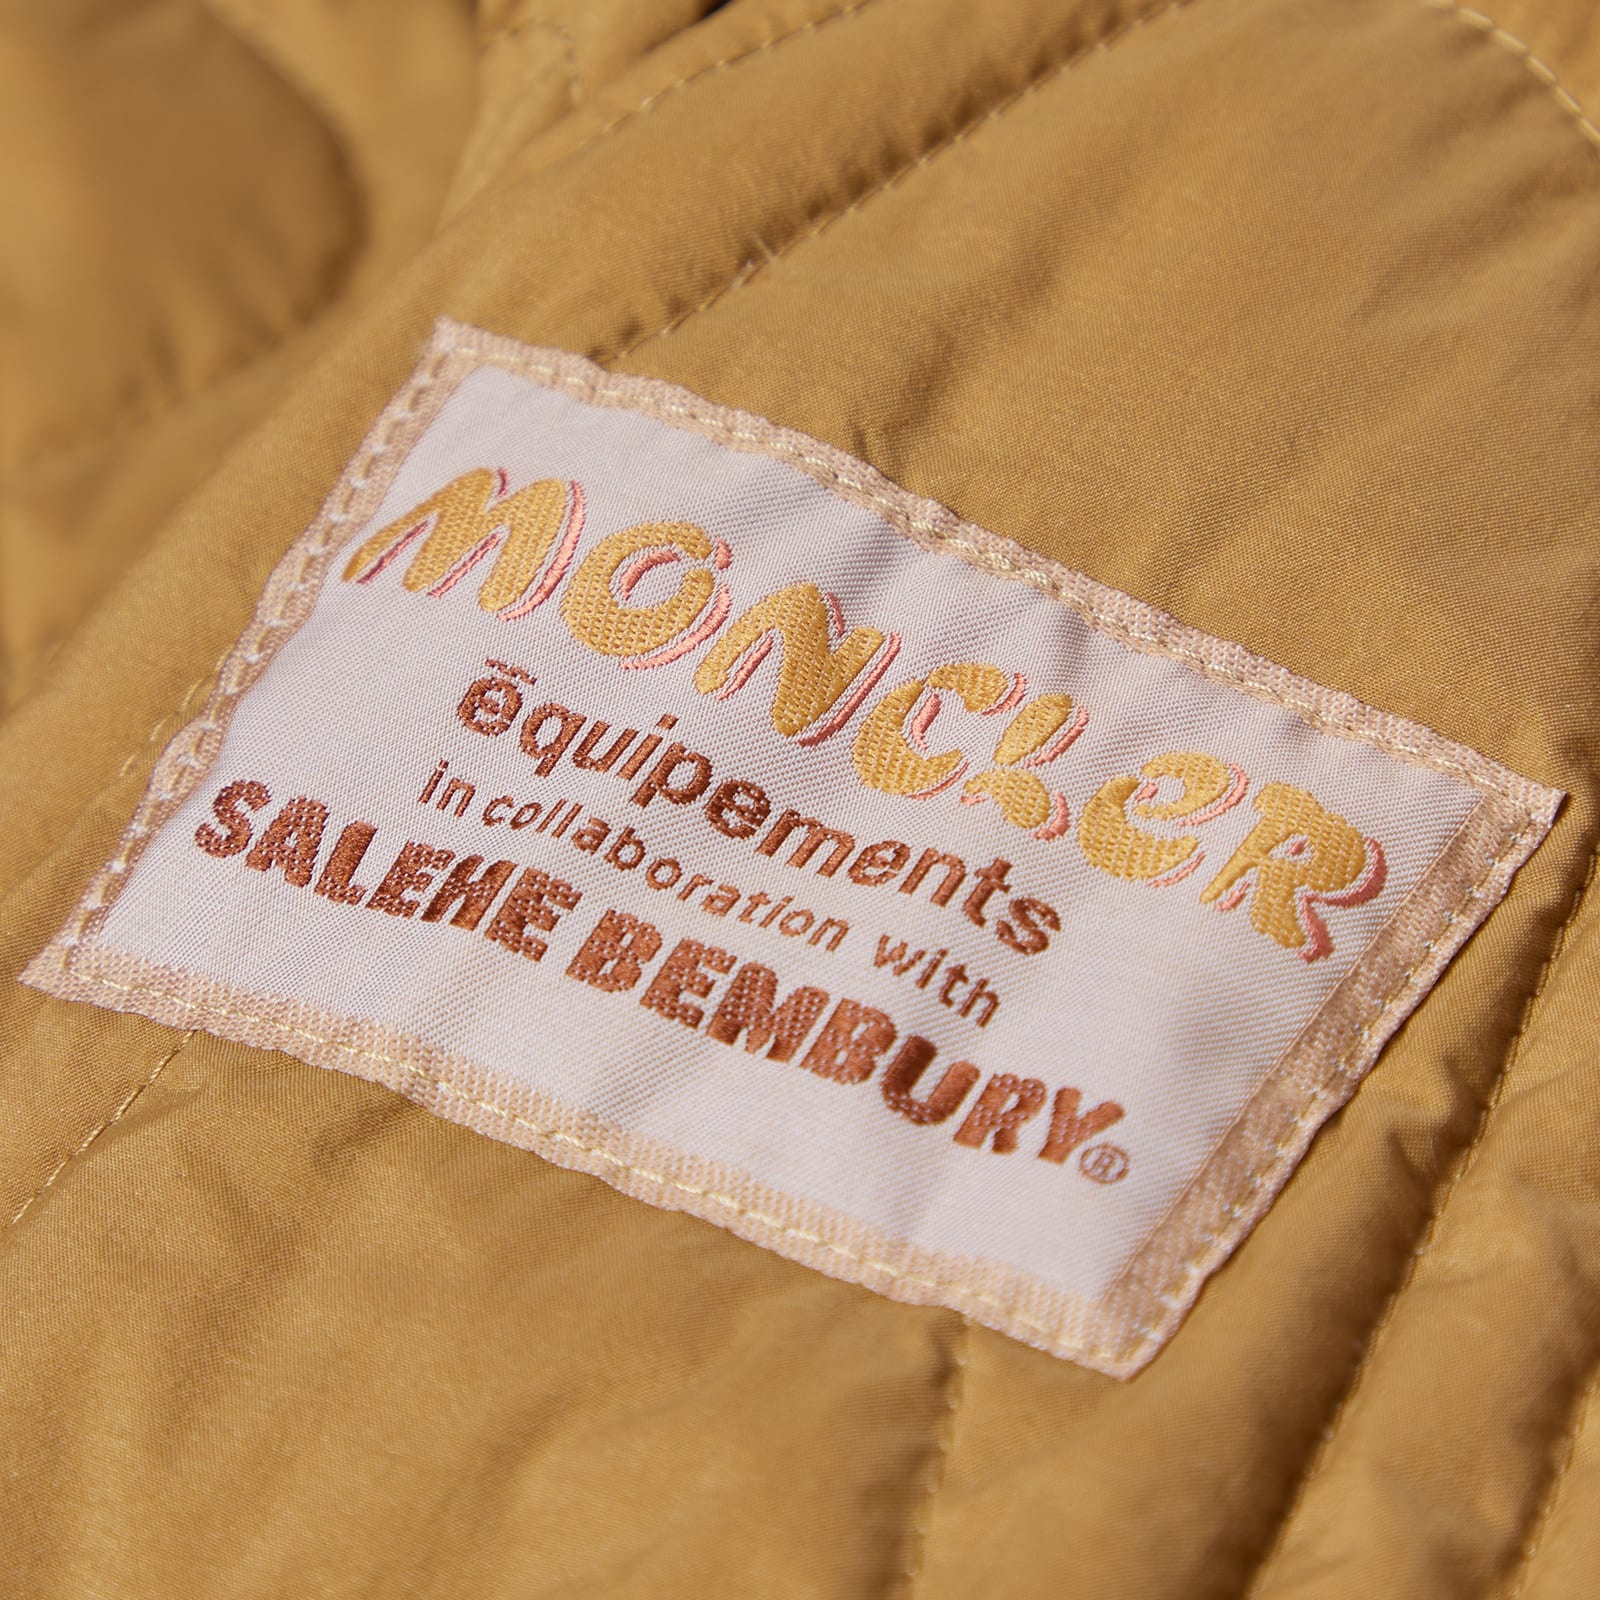 Moncler Genius x Salehe Bembury Harter-Heighway Jacket - 2